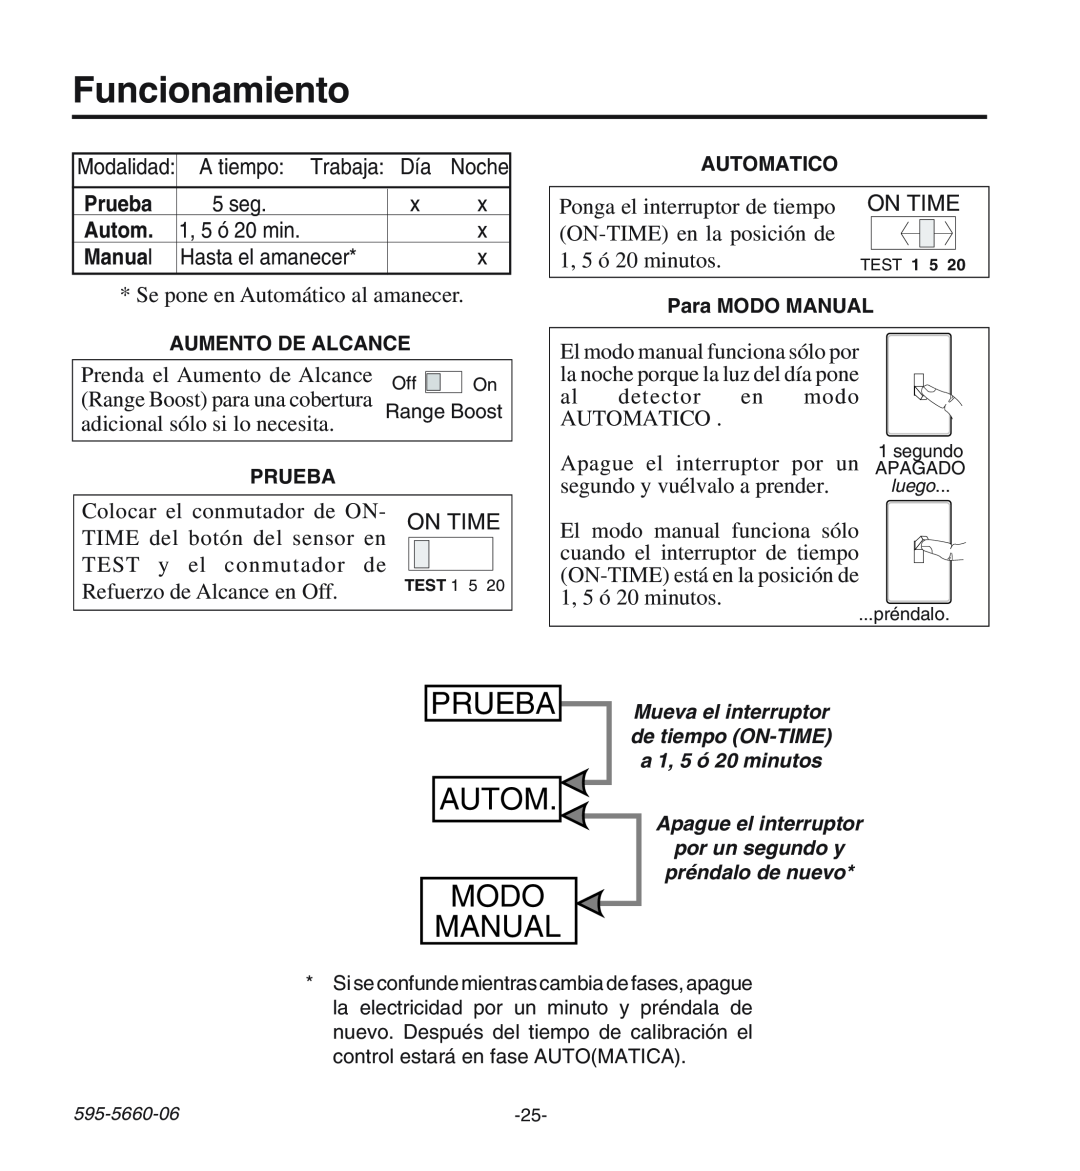 Desa HD-9140 manual Funcionamiento, Prueba, Autom Modo Manual 